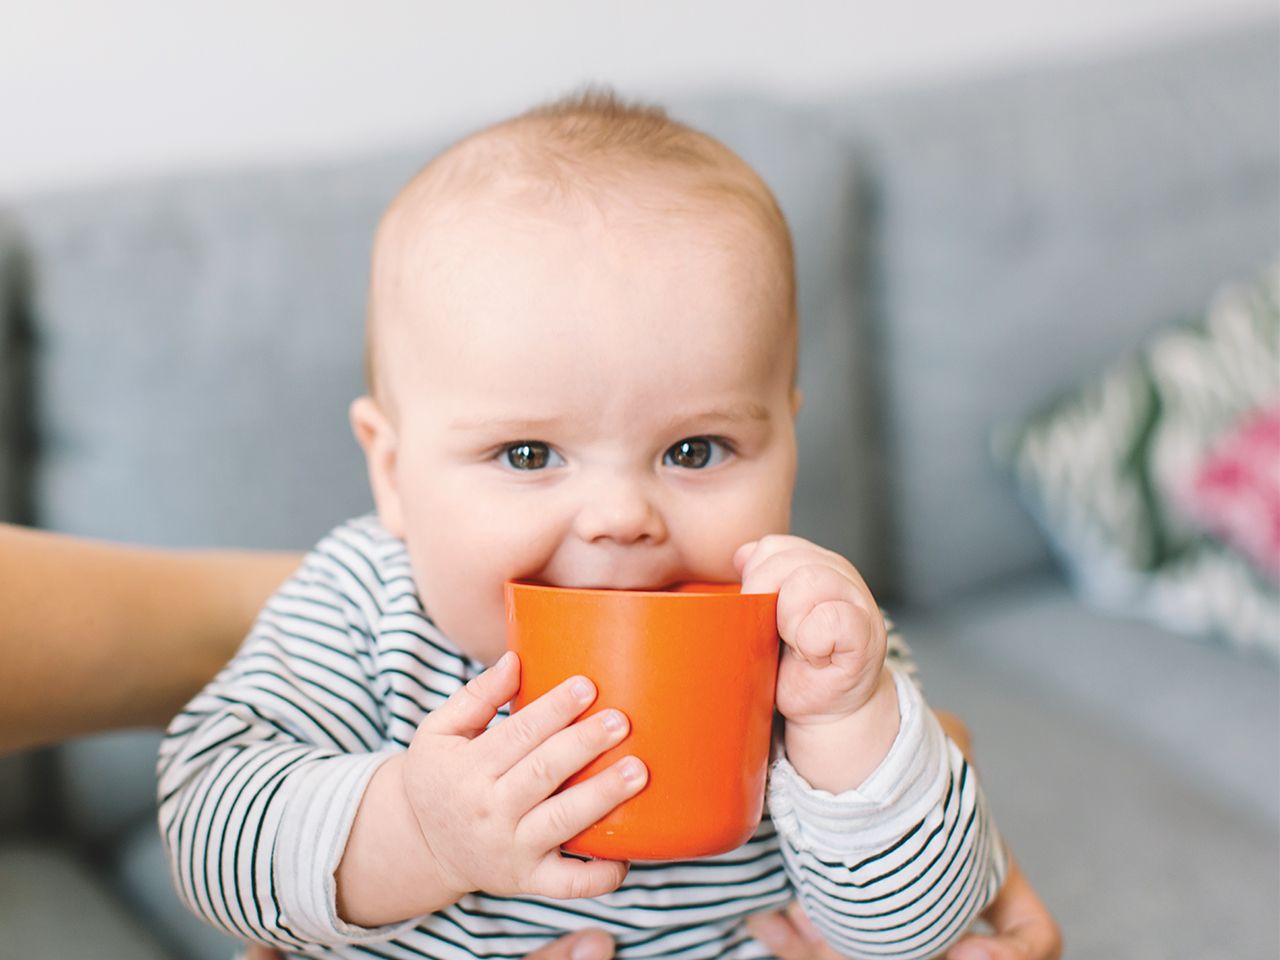 Recenzia najlepších sippy pohárov pre kojencov v roku 2020 - výhody, nevýhody a cena